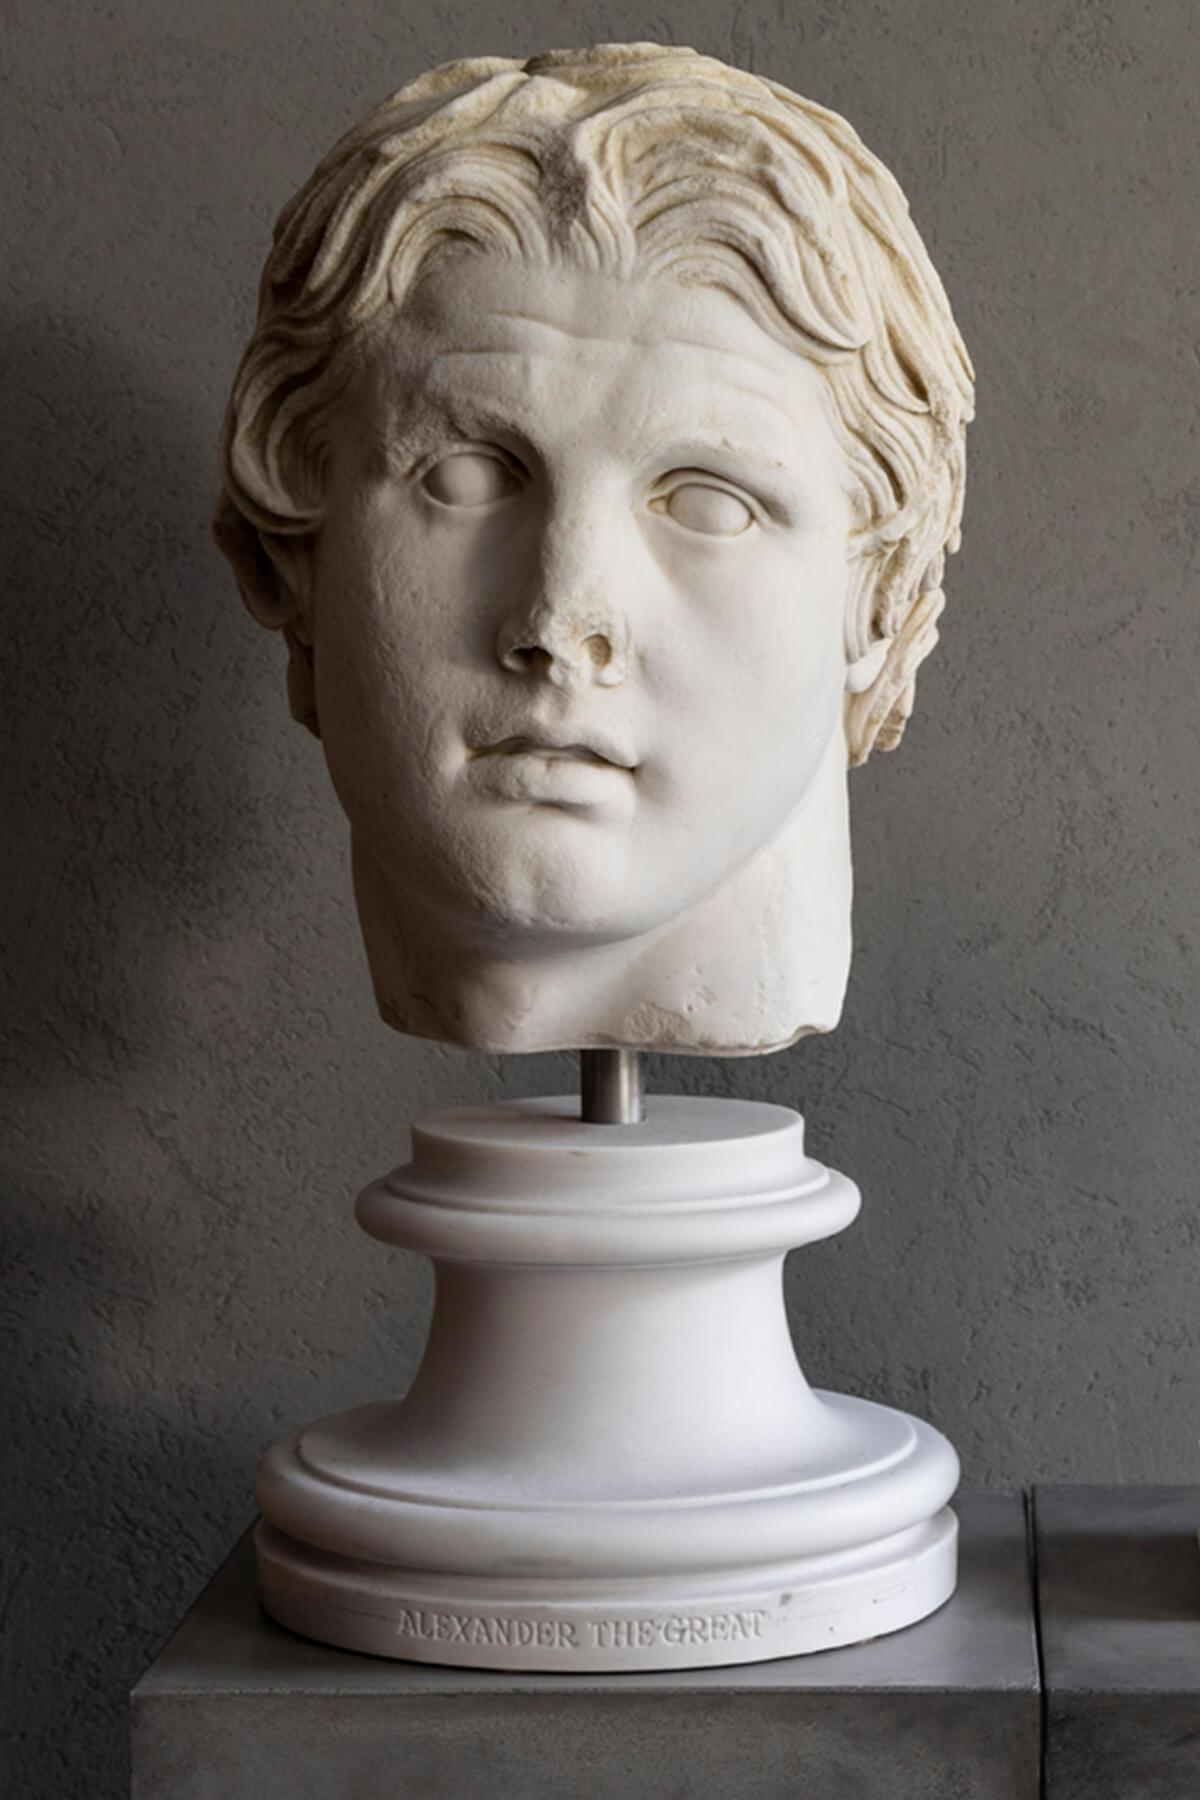 Höhe: 56 cm / Gewicht: 20 kg

Alexander, der eigentliche Name des Makedonen III. Alexandros, allgemein bekannt als Alexander der Große, war König des antiken griechischen Königreichs Makedonien und ein Mitglied der Argead-Dynastie. Er wurde 356 v.